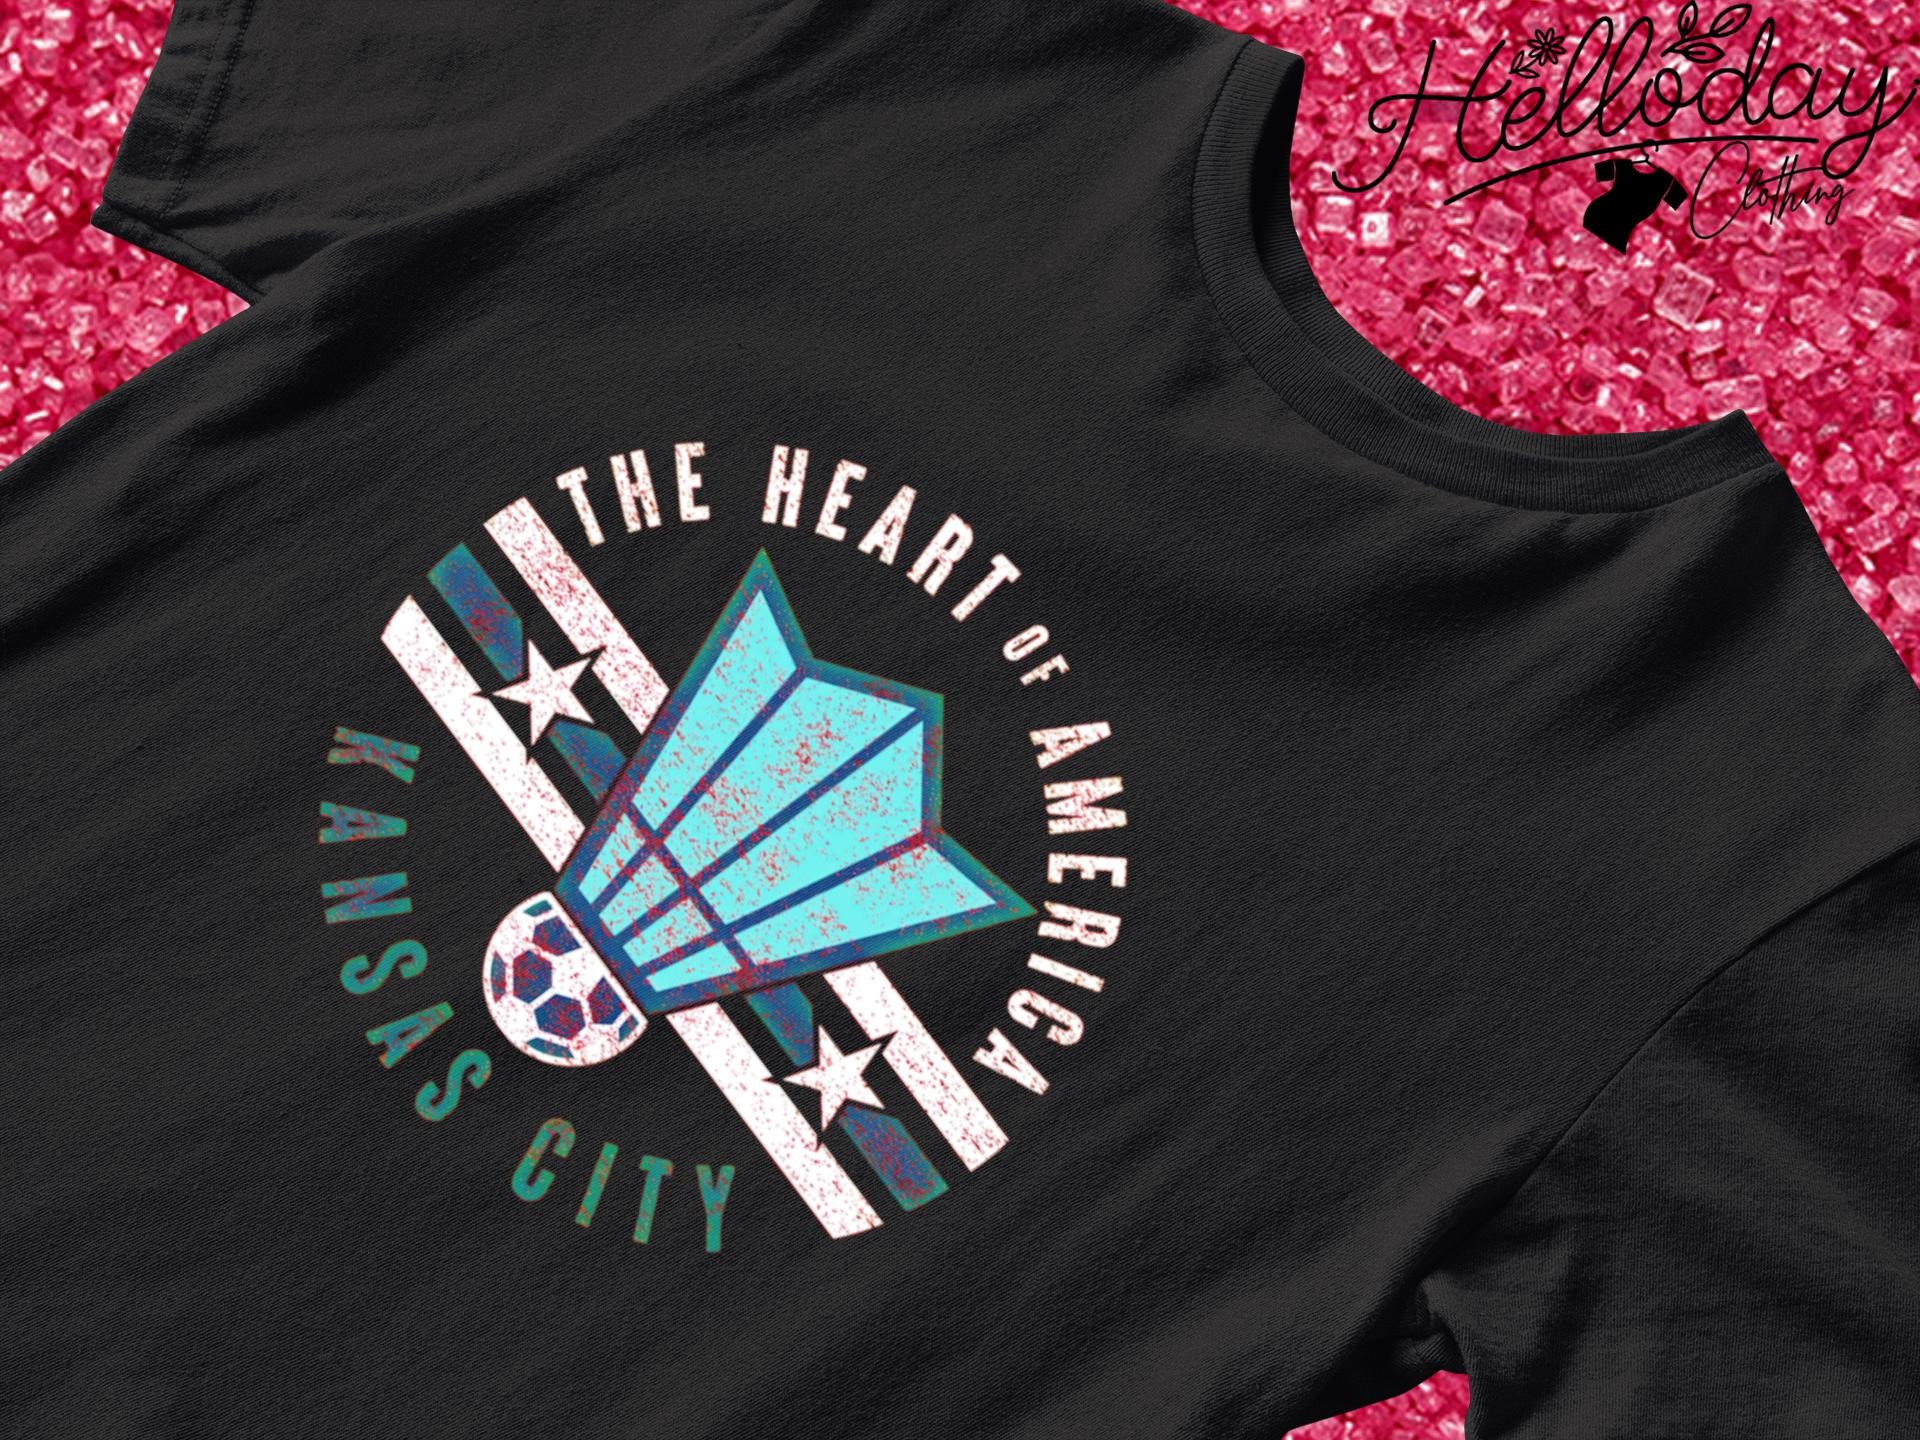 Heart of America Kansas City Soccer shirt